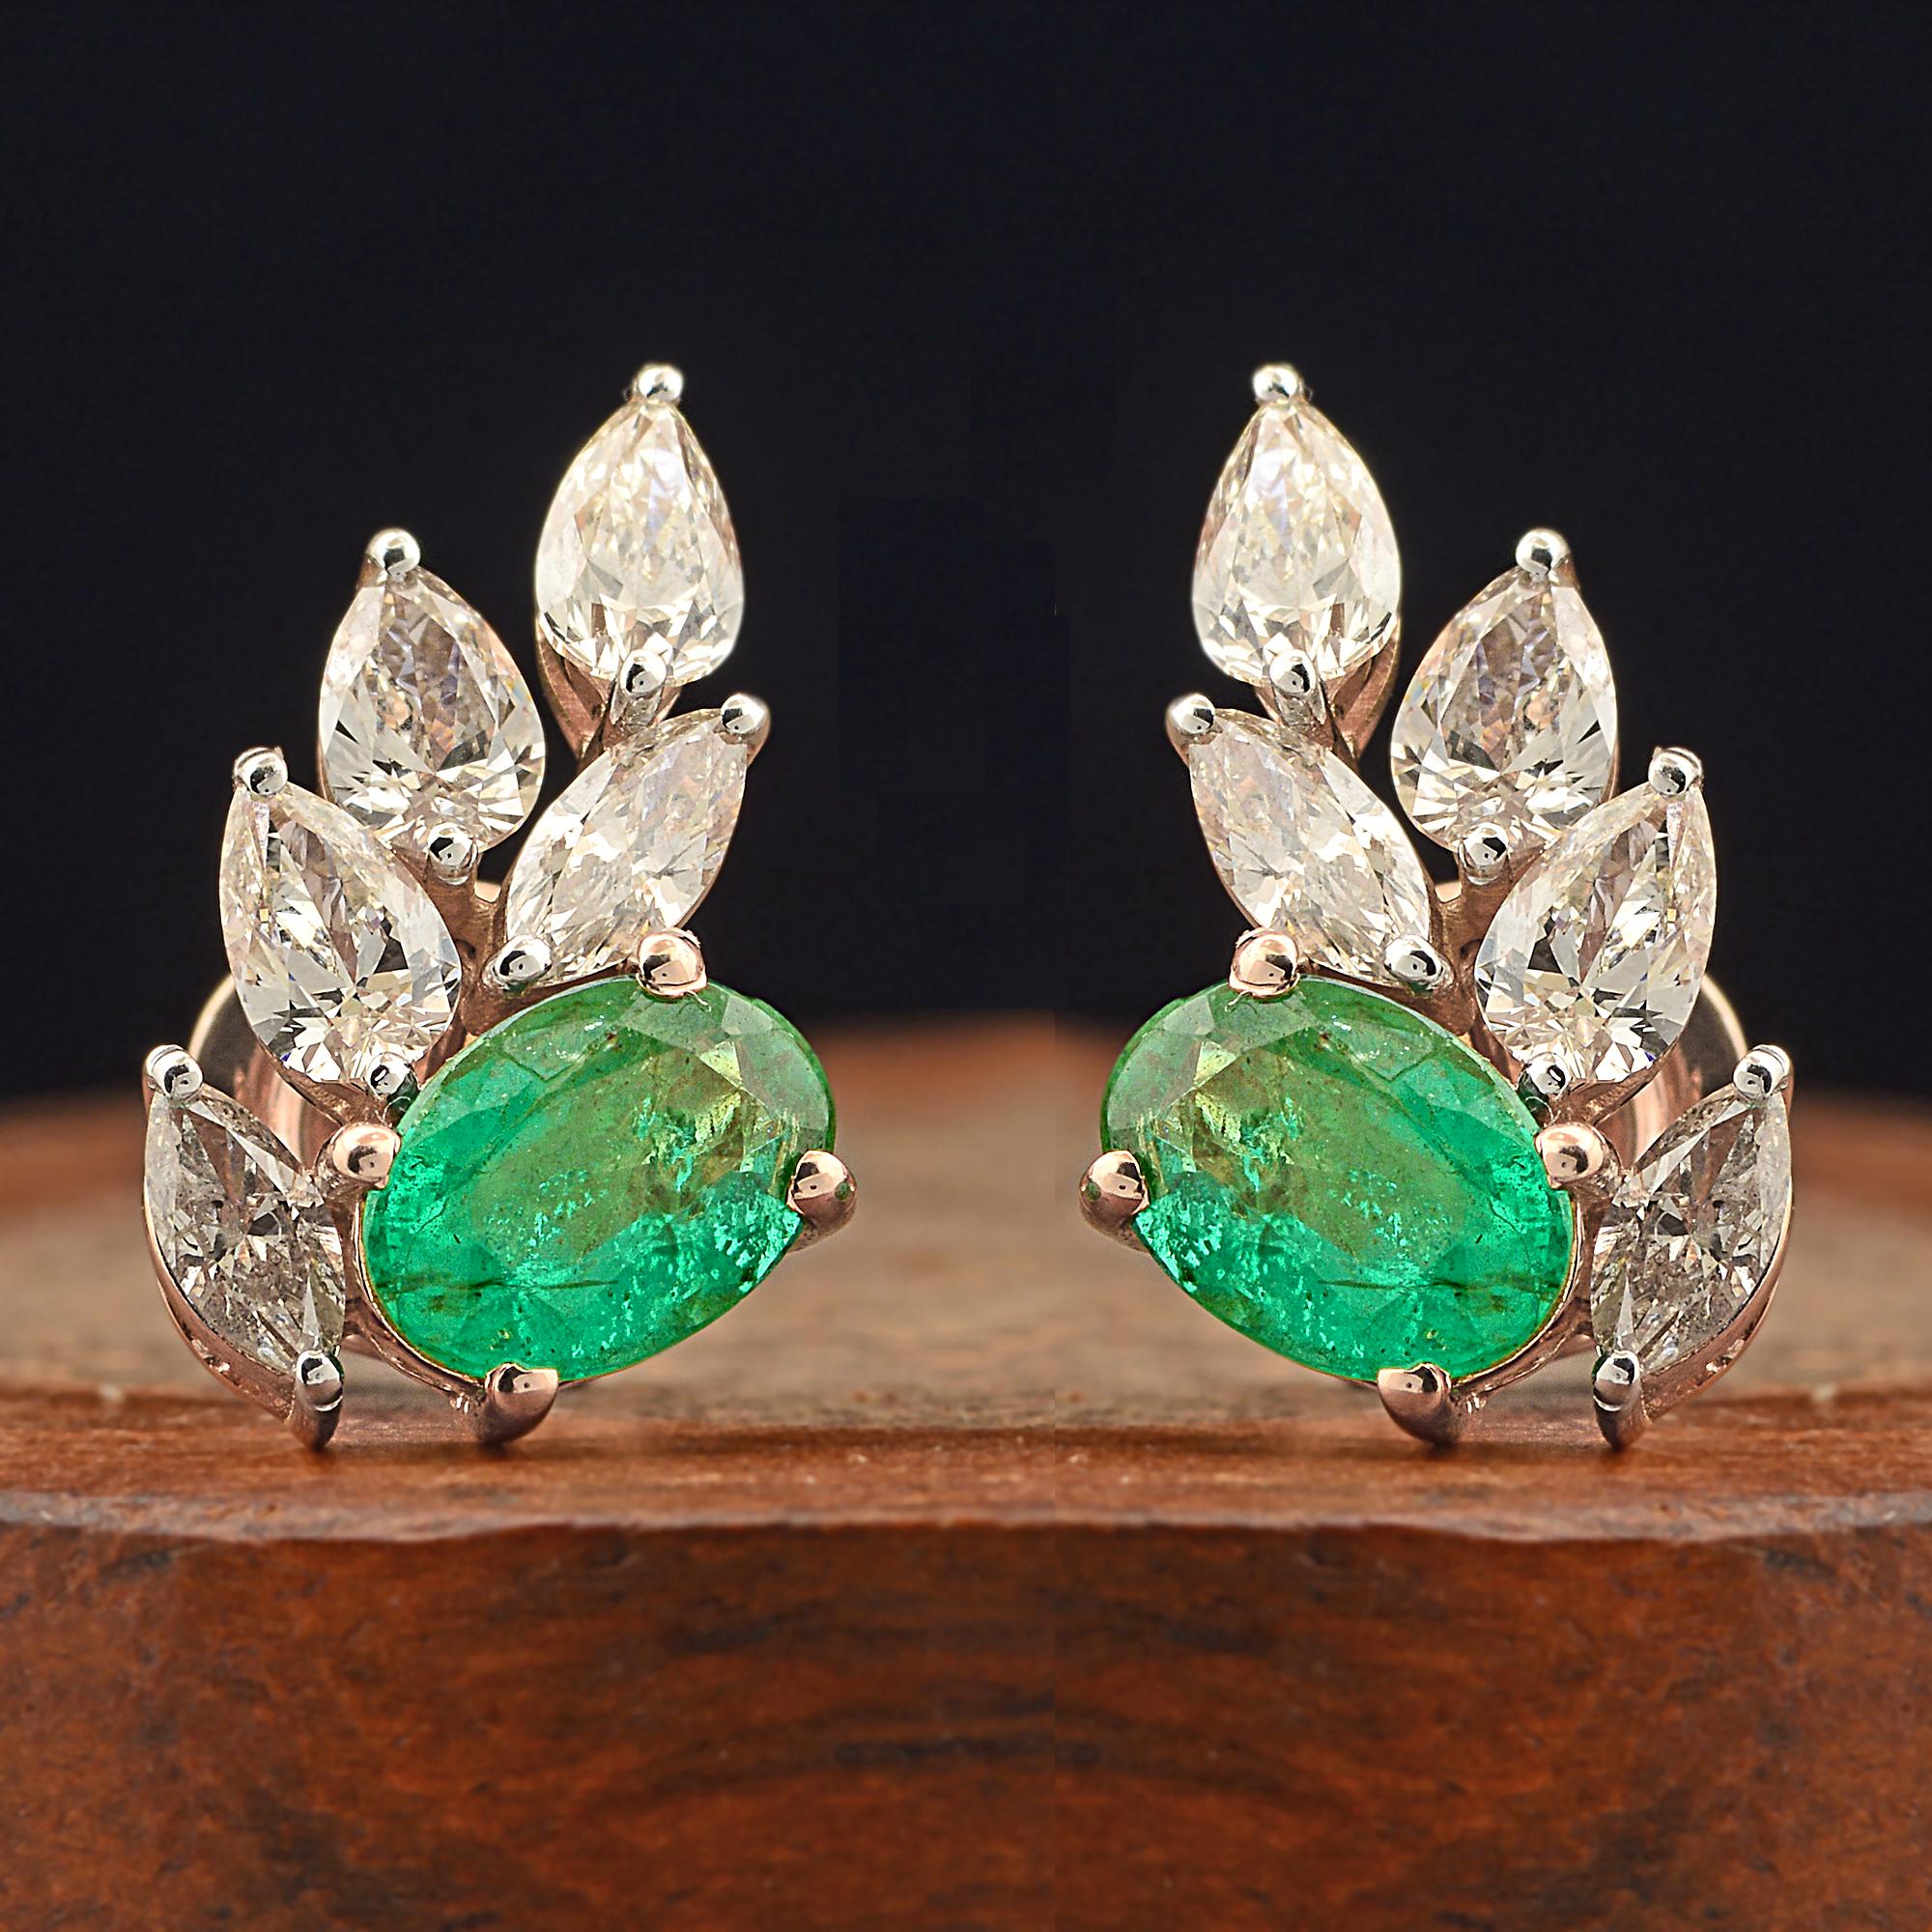 Oval Cut Oval Zambian Emerald Gemstone Stud Earrings Diamond 18 Karat Rose Gold Jewelry For Sale